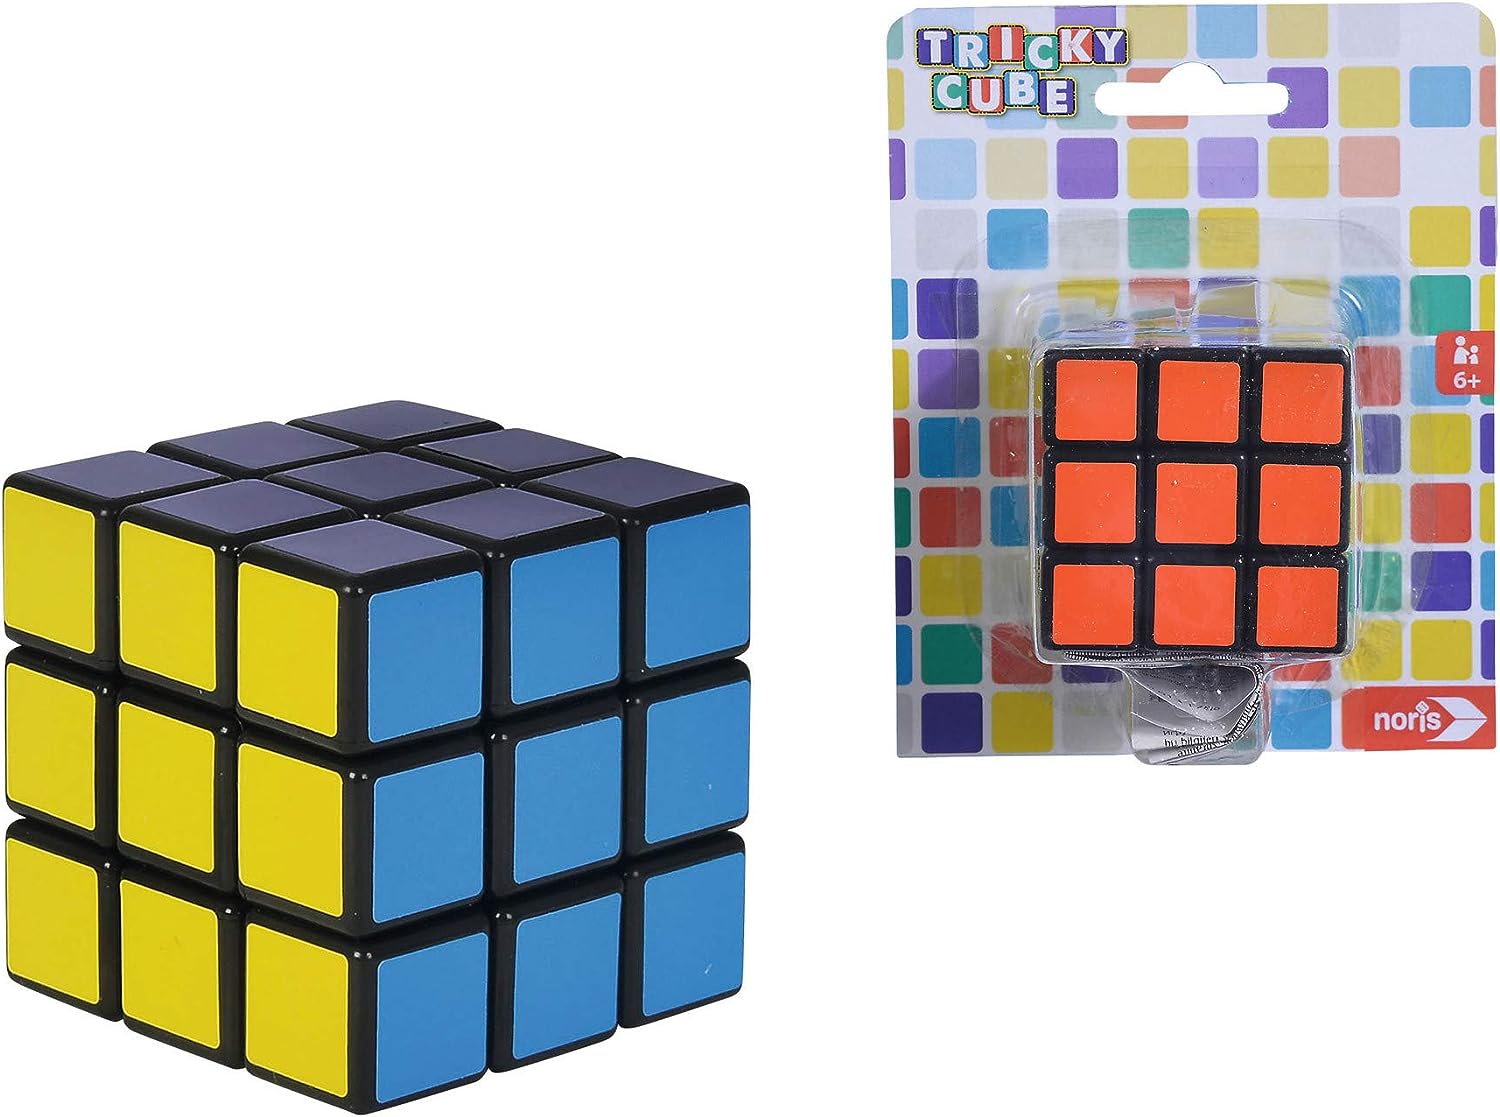 Noris 606131786 Tricky Cube, der Klassiker zur Förderung des Räumlichkeitsdenkens, für Kinder ab 6 Jahren